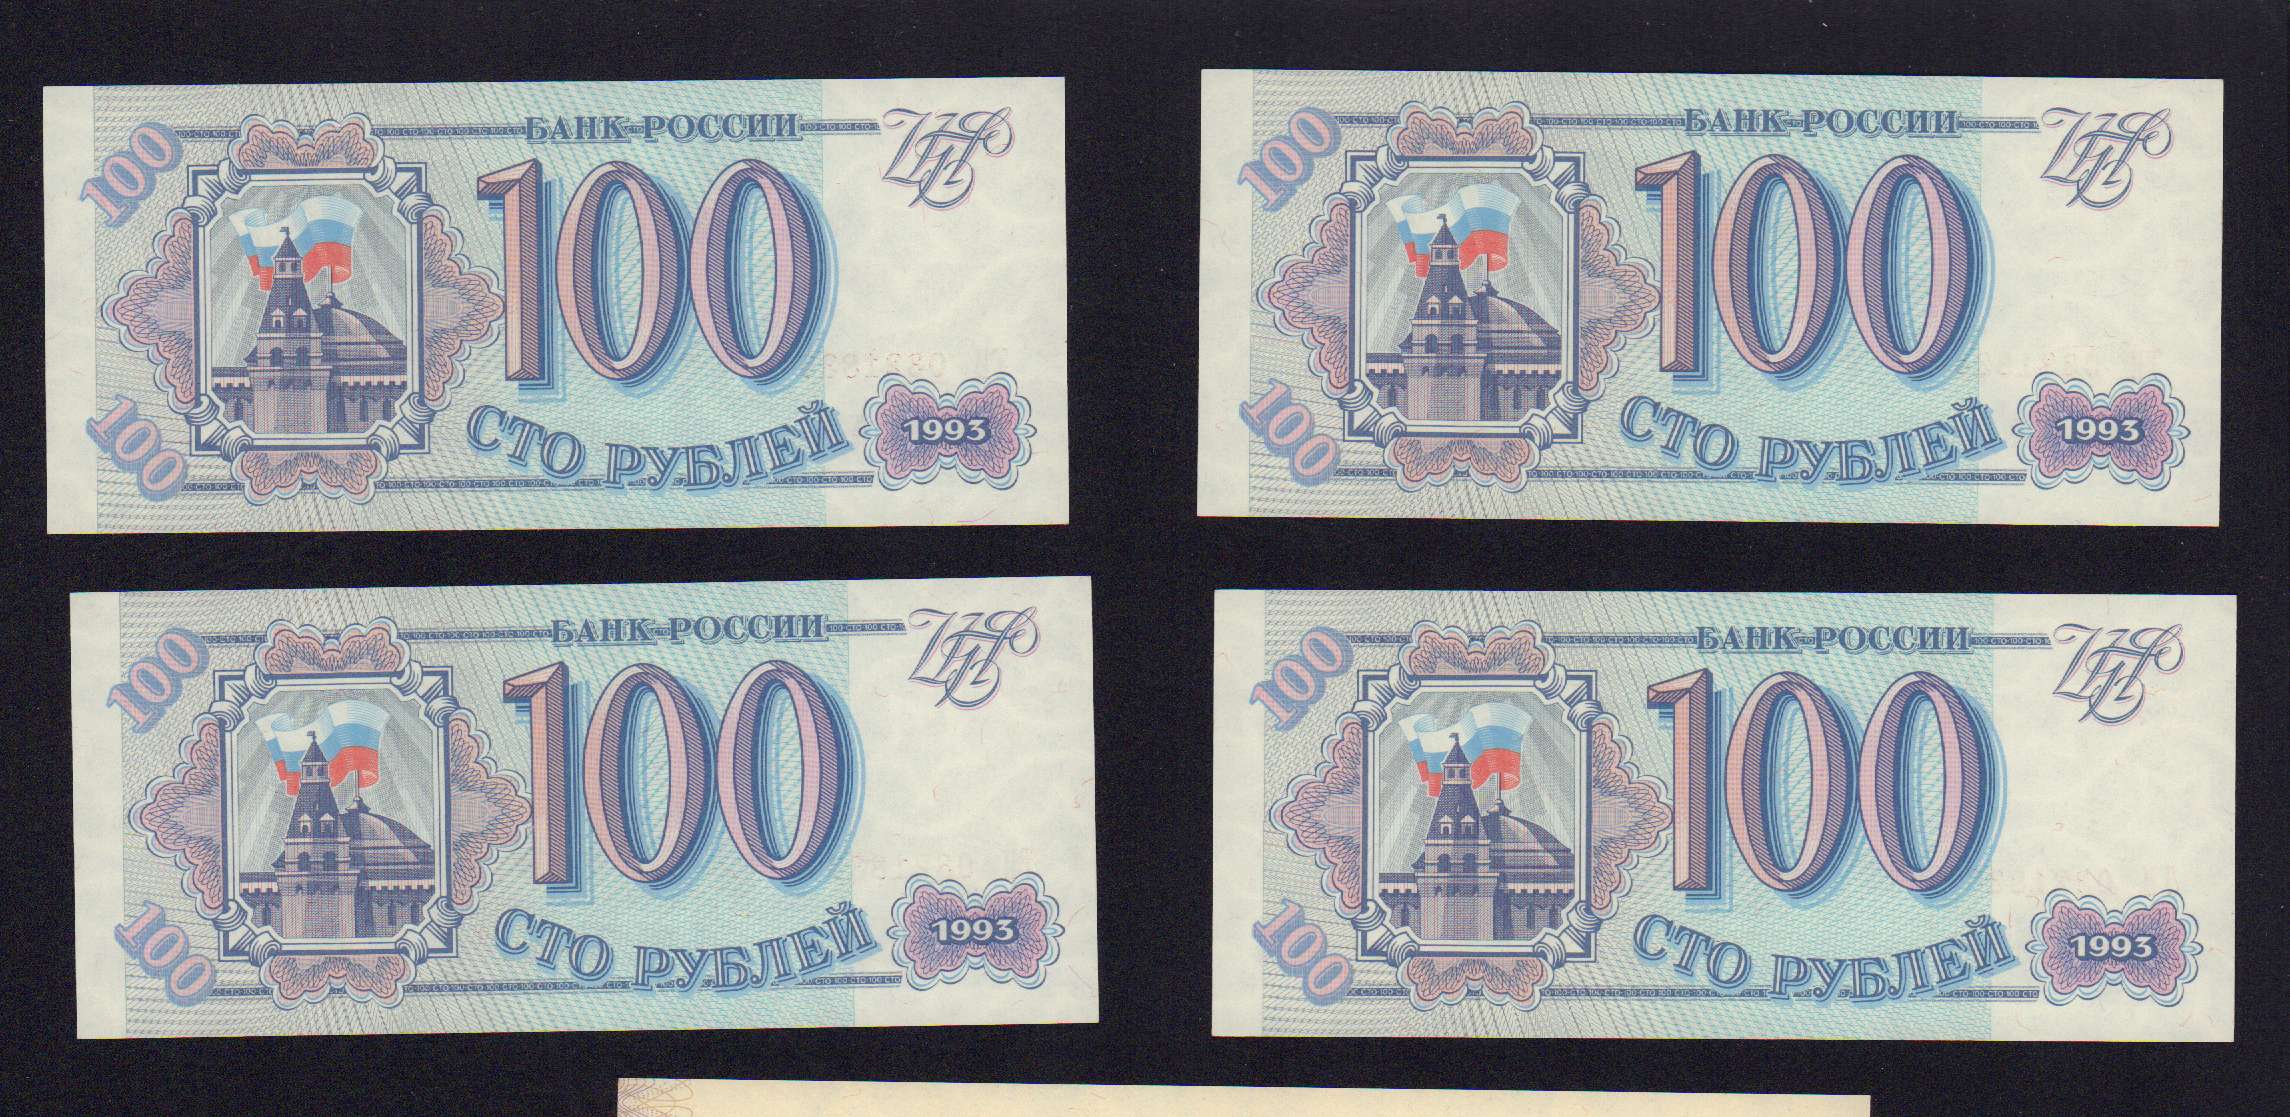 31 500 в рублях. Боны 1993 года Россия.